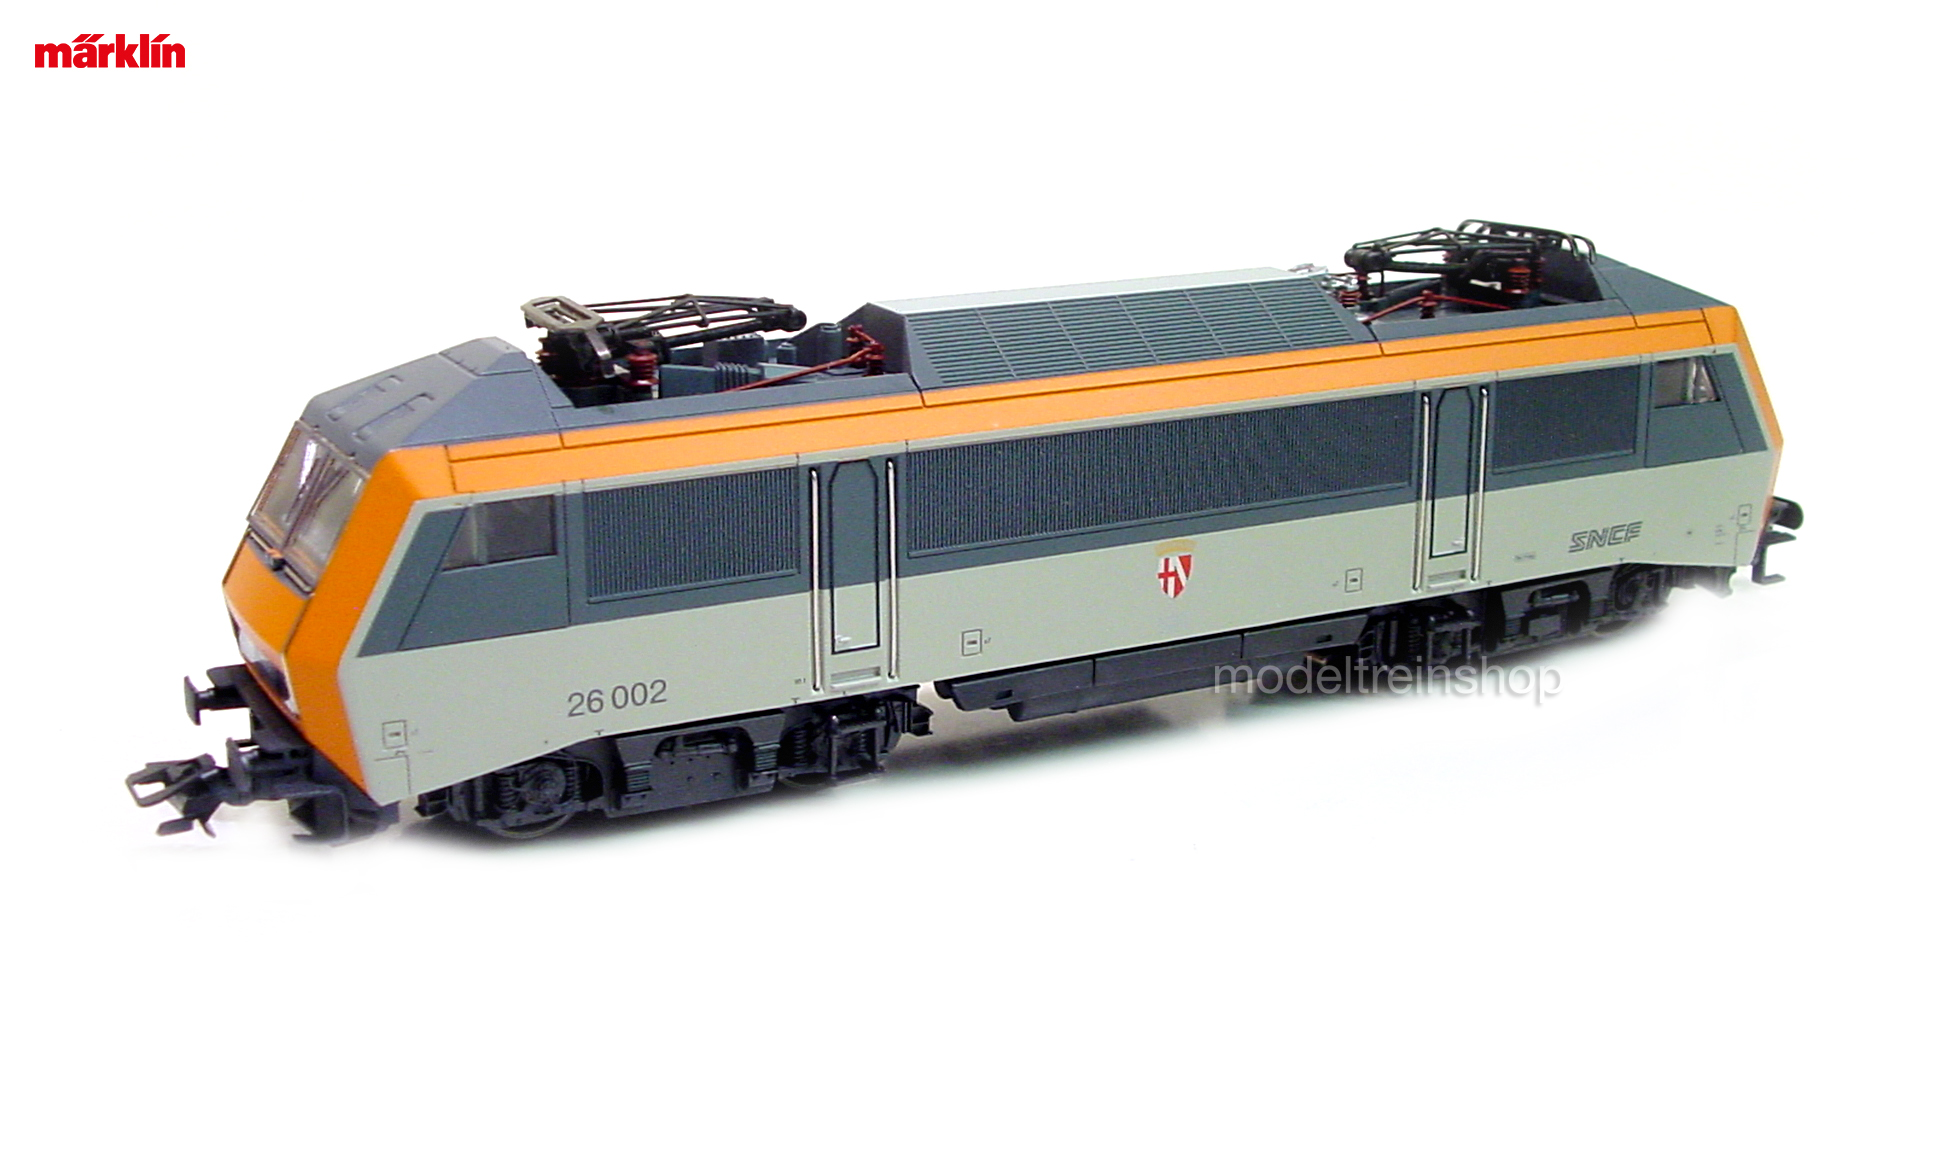 Marklin H0 3334 V3 Electrische Locomotief Serie BB 26000 - Modeltreinshop